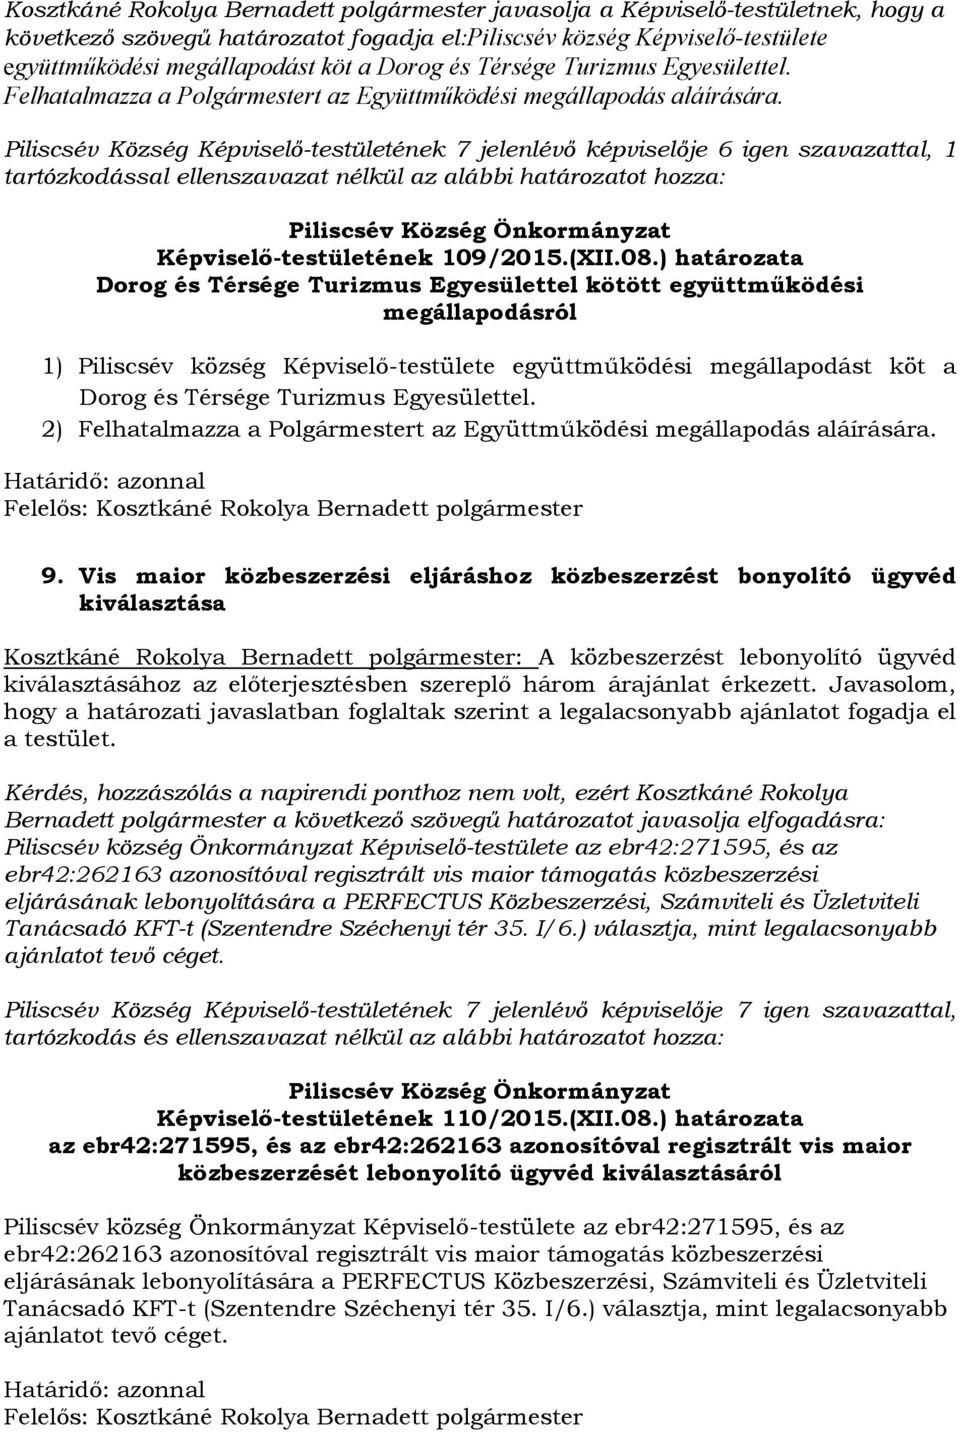 Piliscsév Község Képviselő-testületének 7 jelenlévő képviselője 6 igen szavazattal, 1 tartózkodással ellenszavazat nélkül az alábbi határozatot hozza: Képviselő-testületének 109/2015.(XII.08.